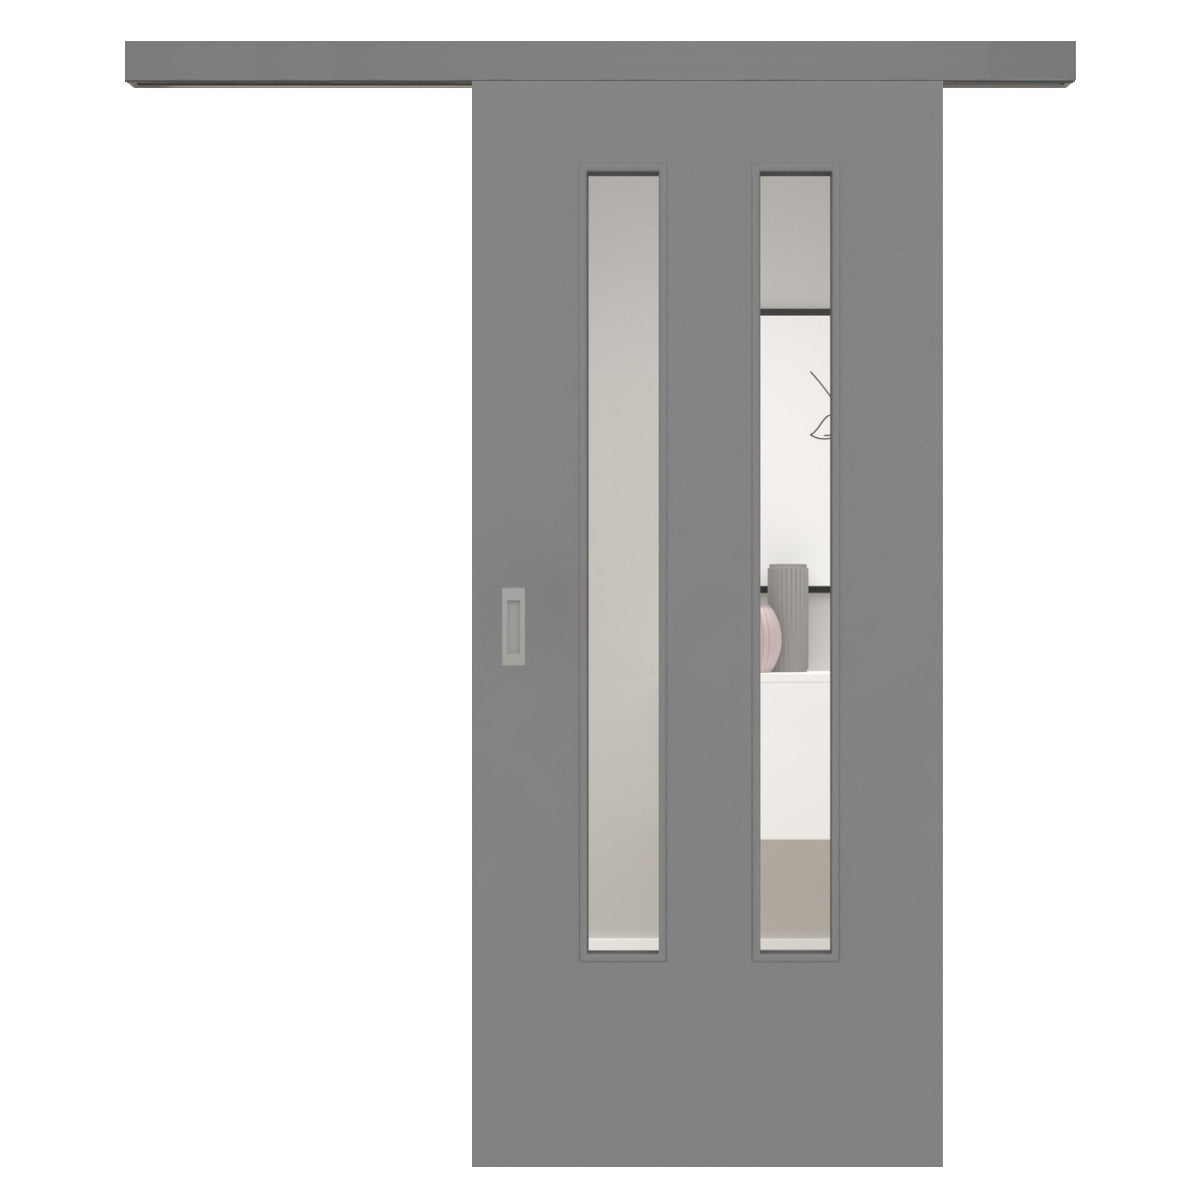 Schiebetür für Set mit grauem Laufkasten mit Lichtausschnitt vertikal grau glatt LA6